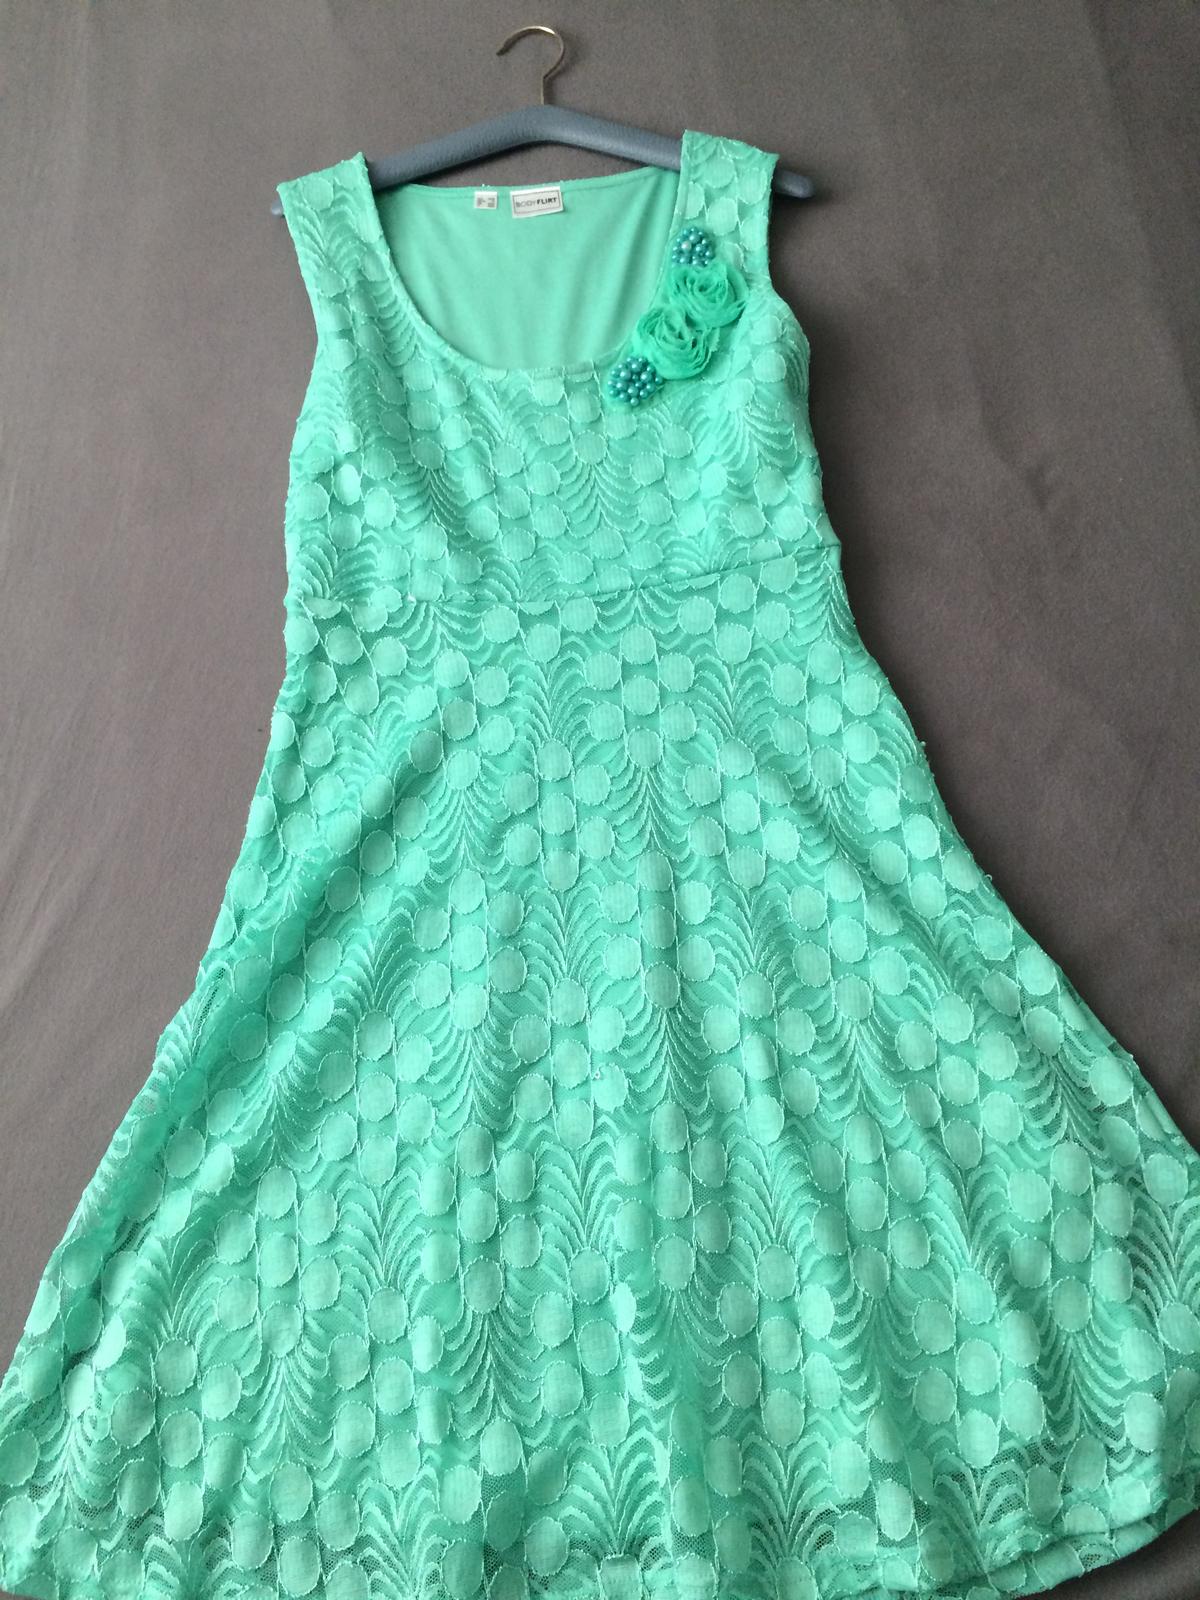 Zelené šaty - Obrázok č. 1